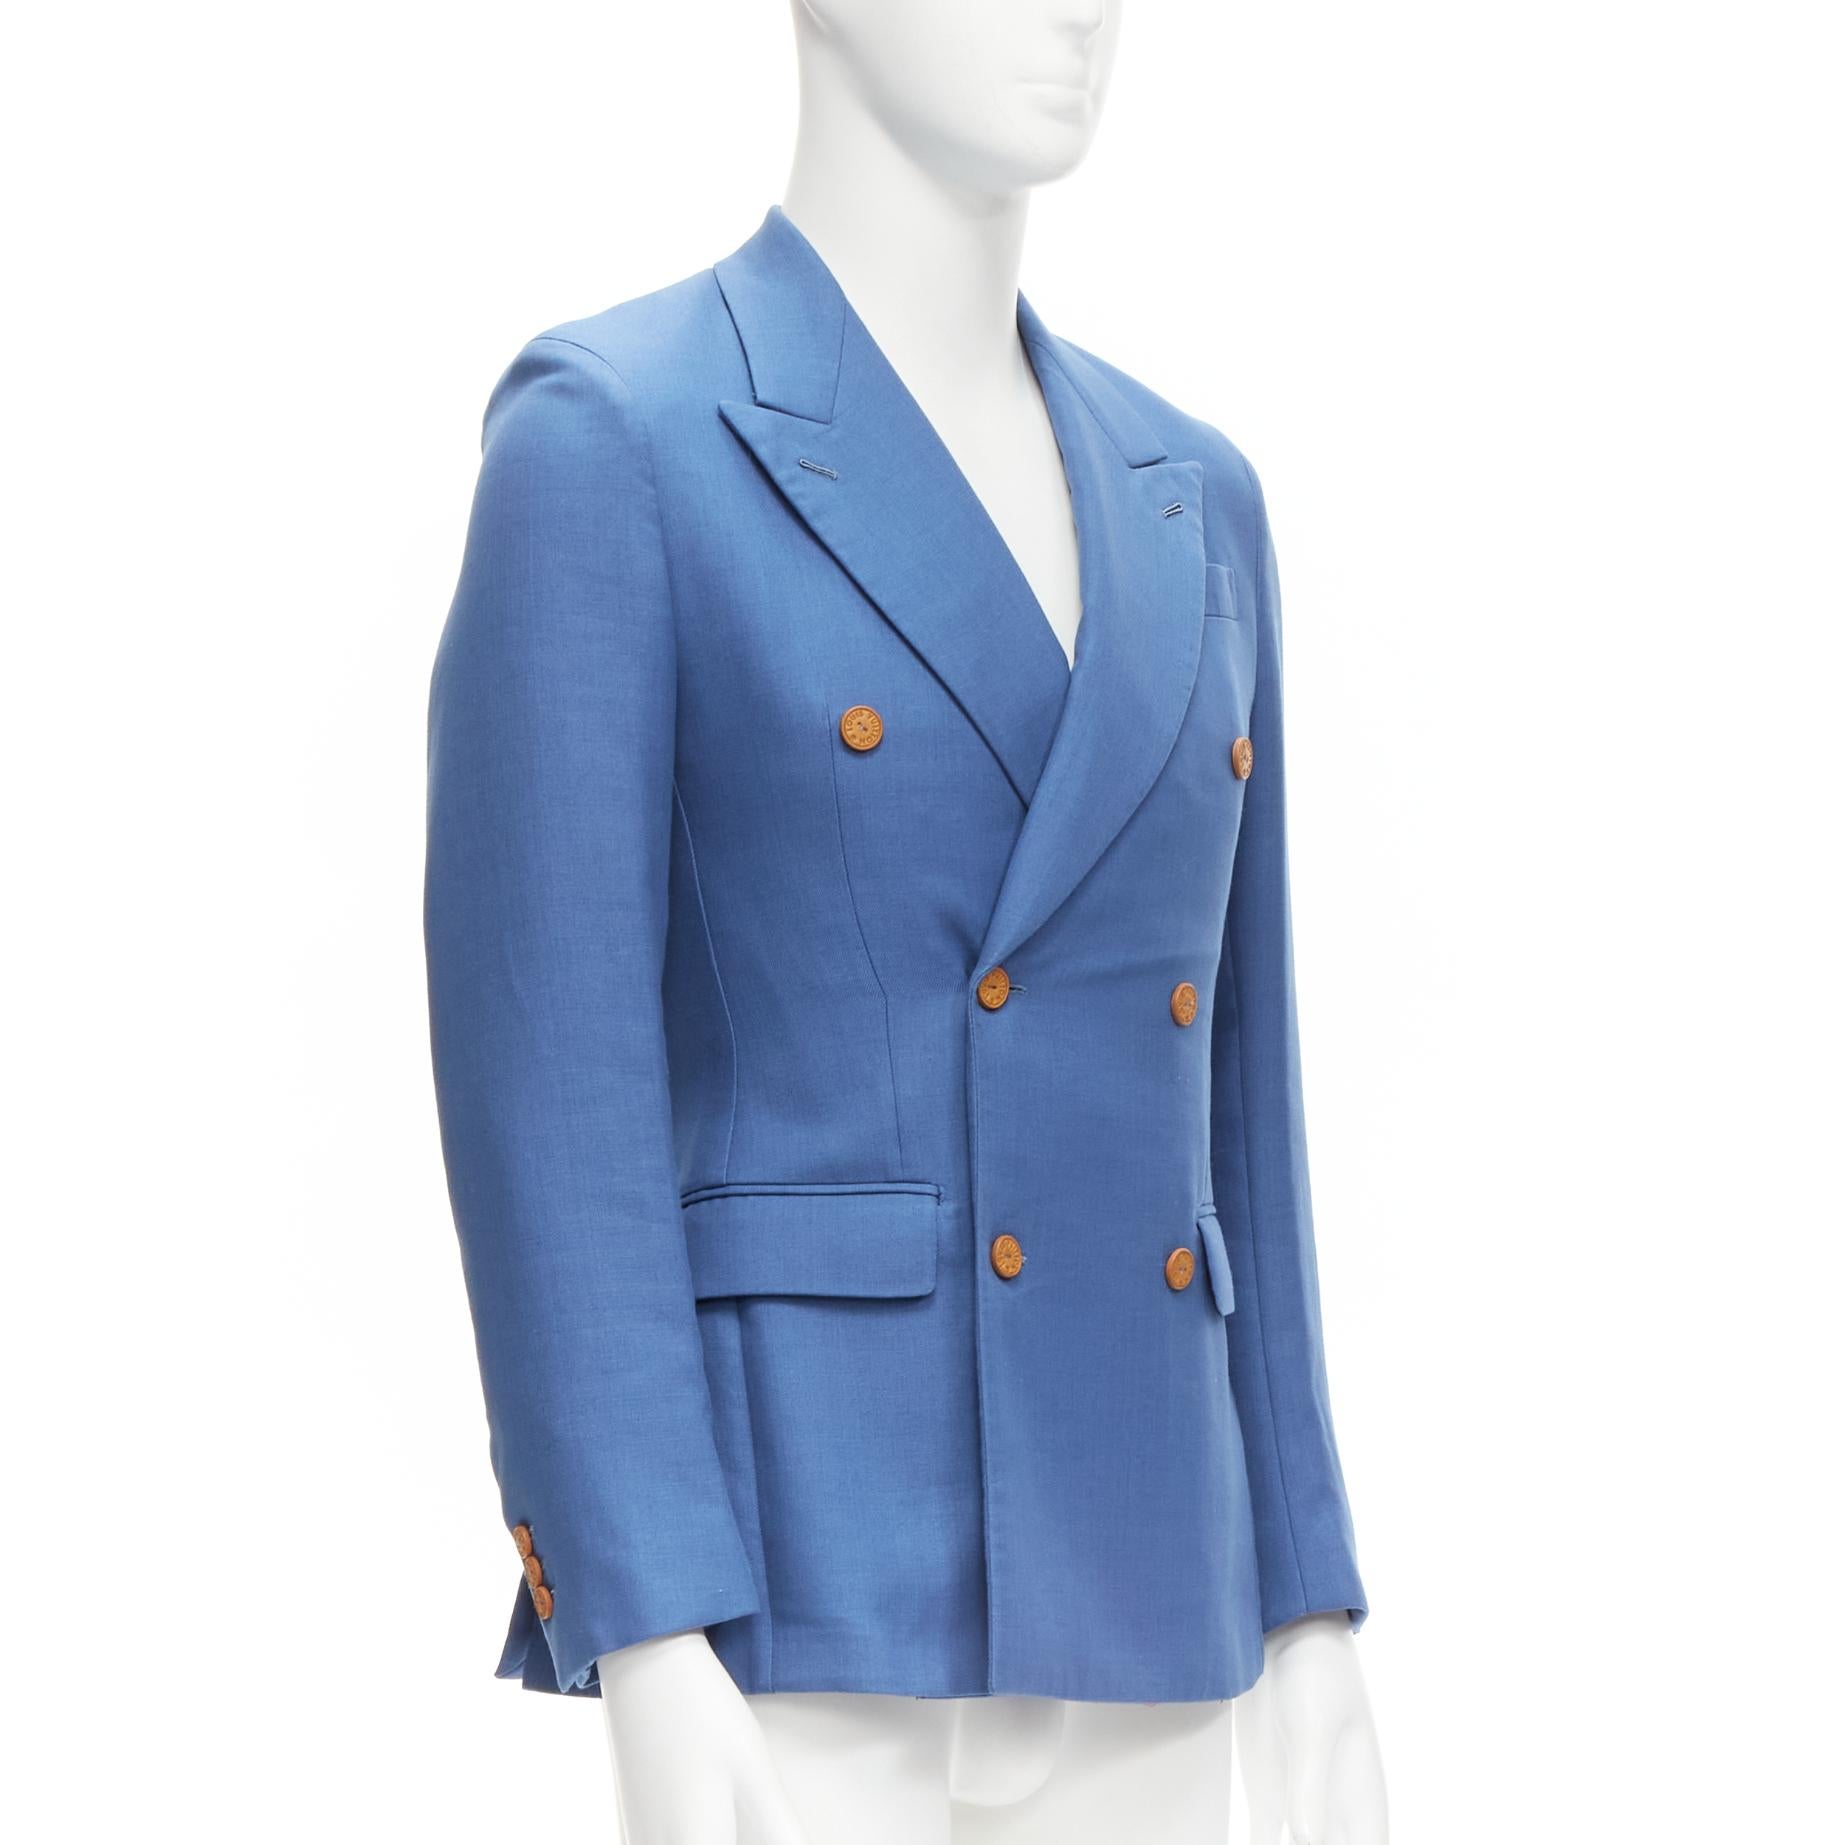 LOUIS VUITTON Zweireihiger Blazer aus blauer Baumwolle mit LV-Knöpfen FR44 XS (Blau)